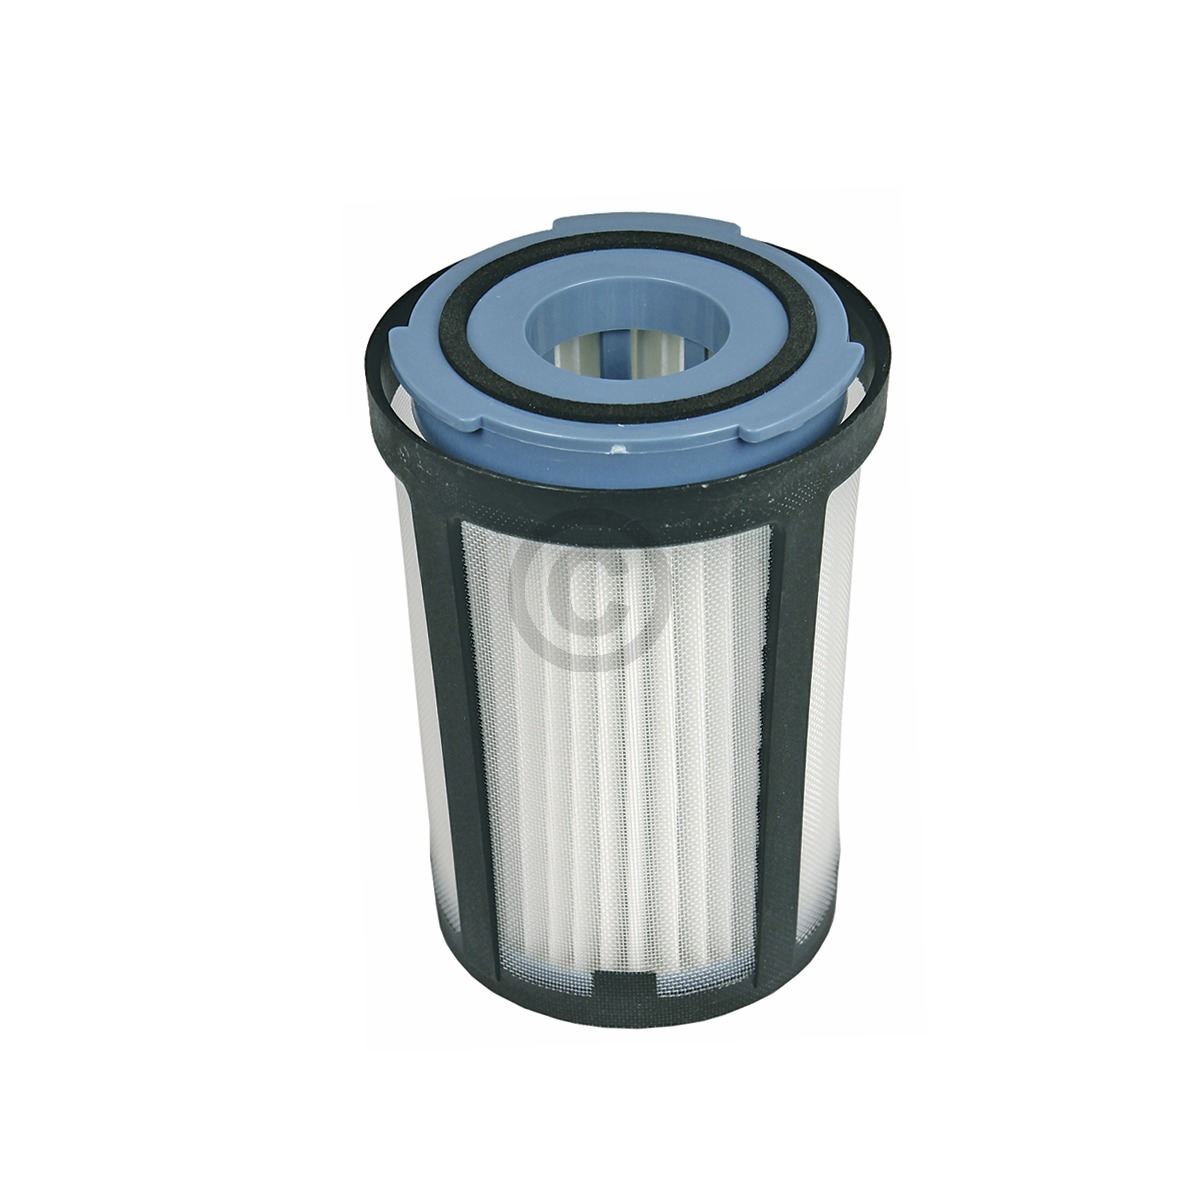 Filterzylinder AEG 405501014/6 Lamellenfilter für Staubsauger